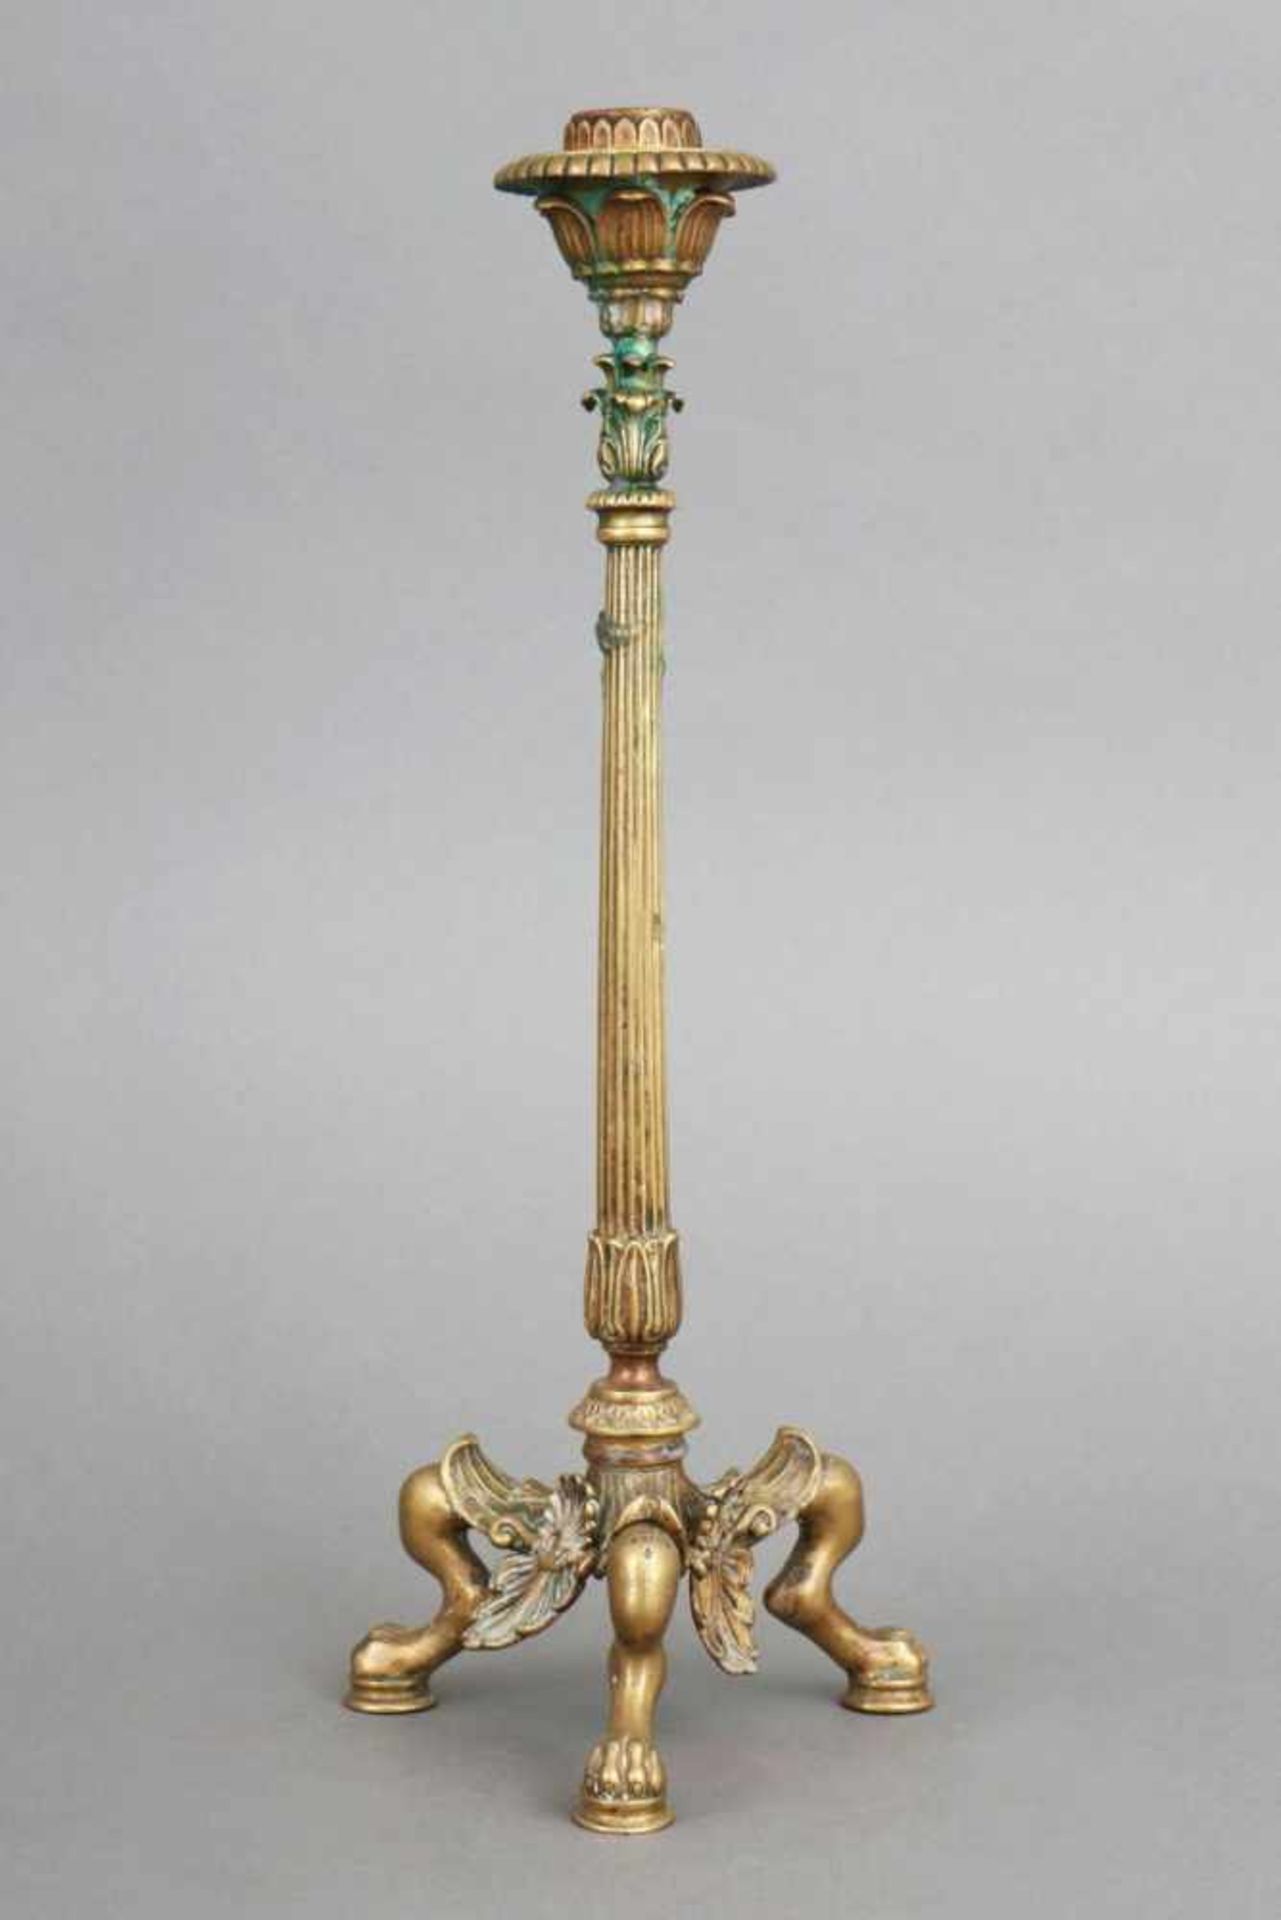 Tischleuchter im Stile des EmpireBronze, Frankreich, Napoleon III., schlanker Schaft, kanneliert,